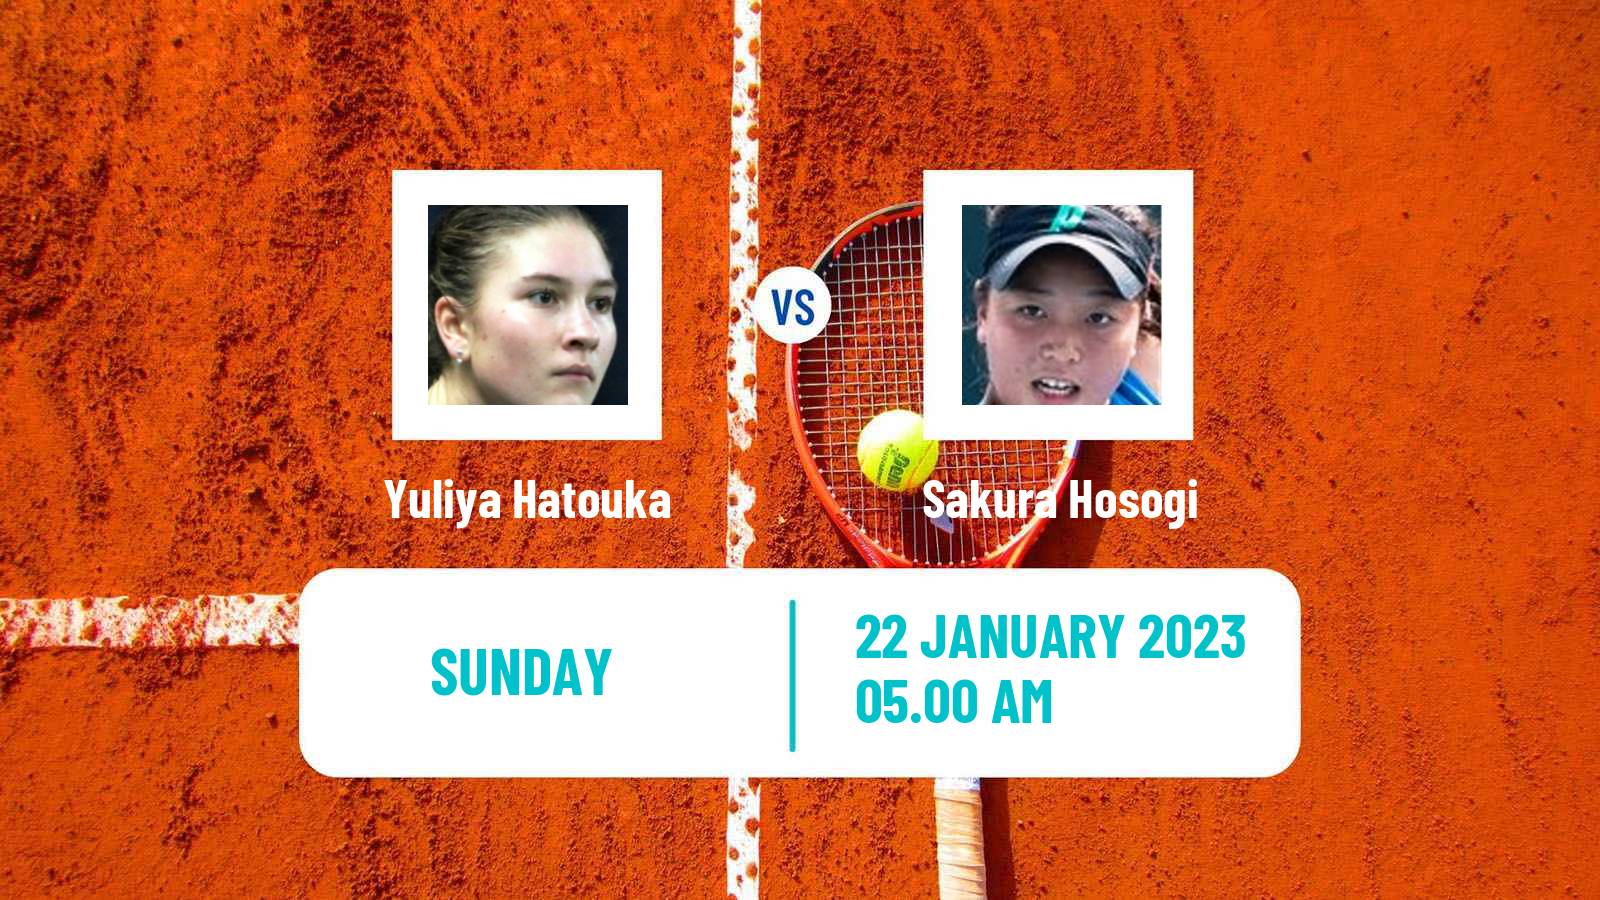 Tennis ITF Tournaments Yuliya Hatouka - Sakura Hosogi